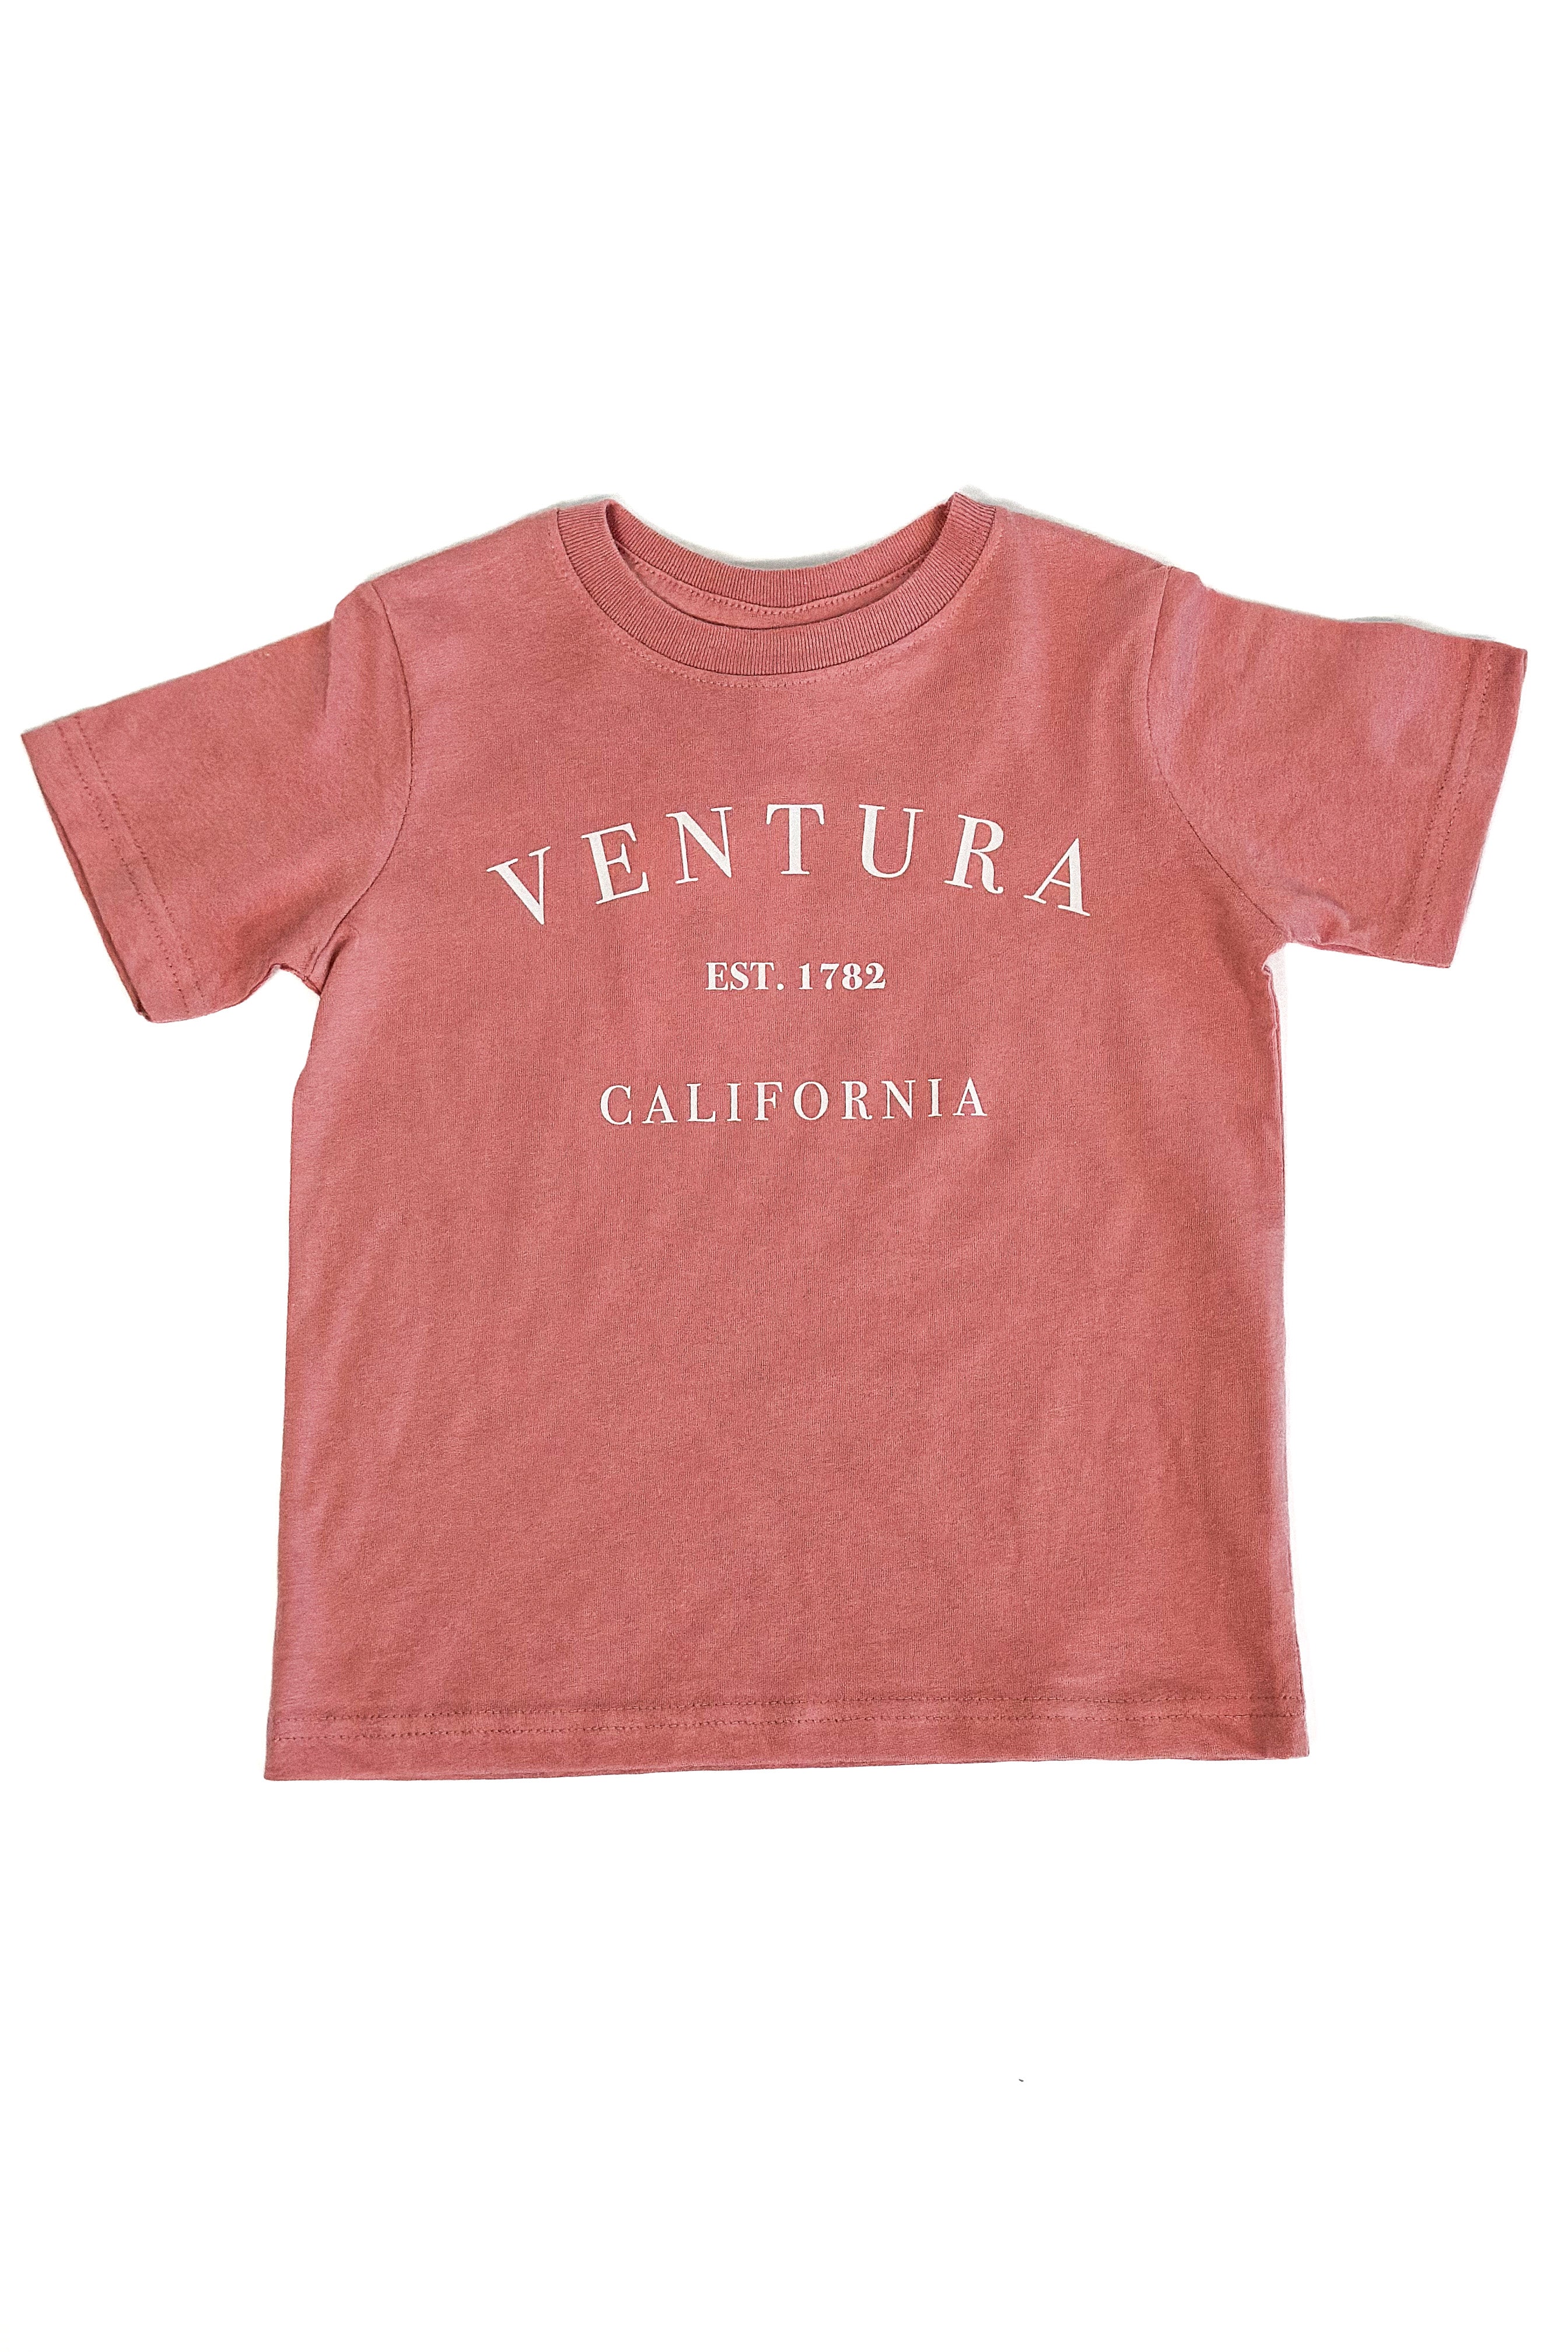 Ventura EST. 1782 Kids Tee (Rose)